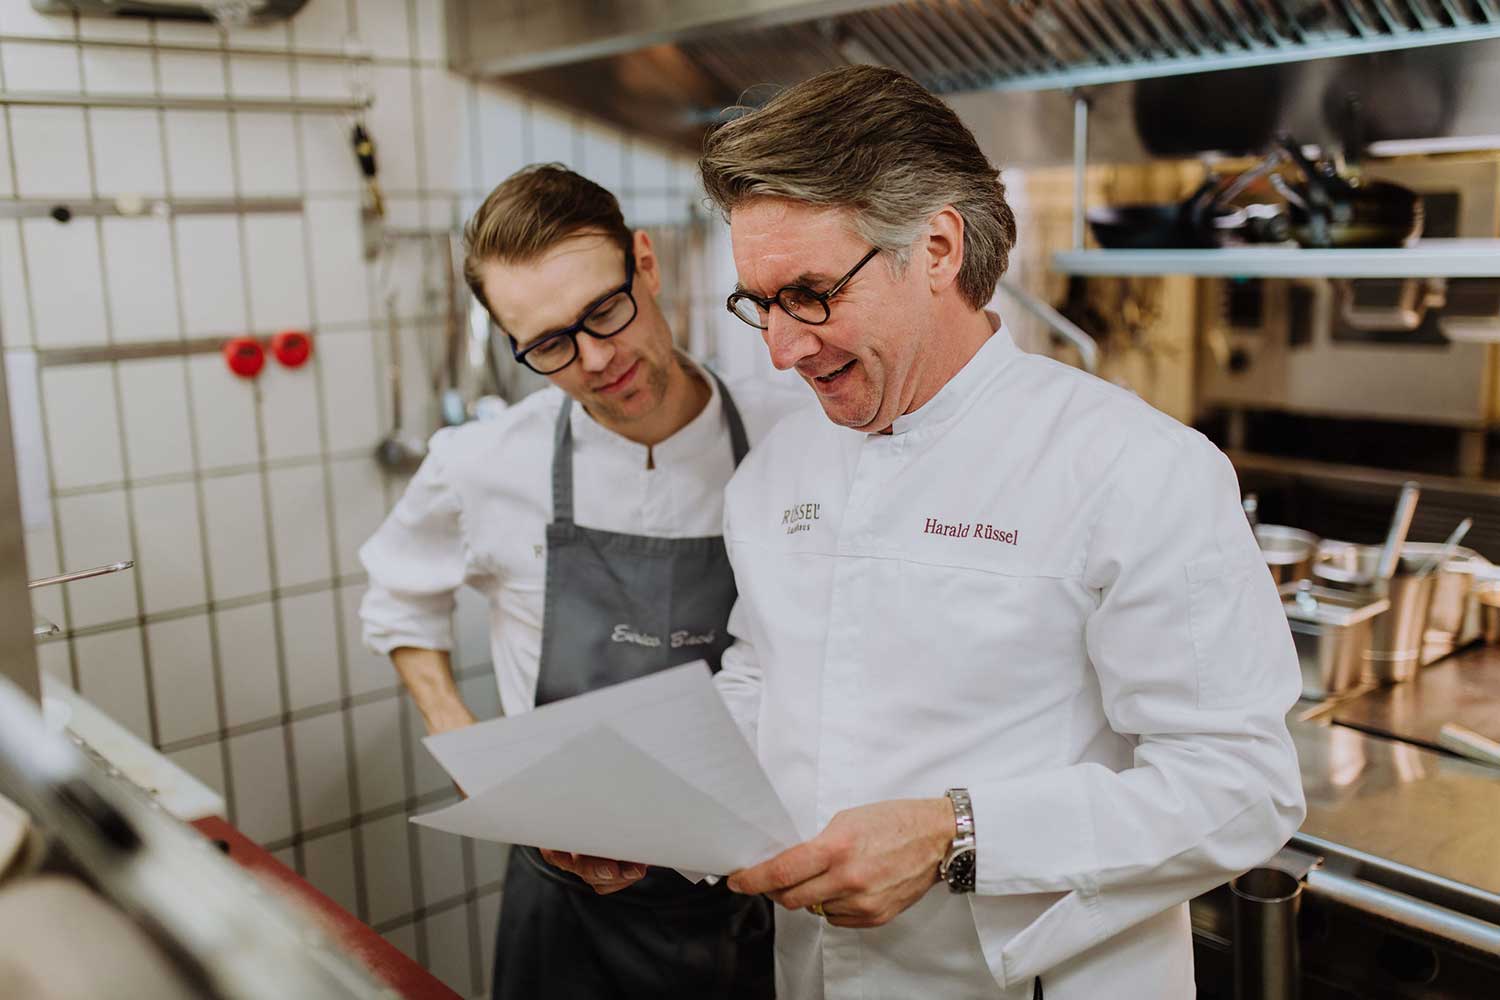 Rüssels Landhaus, eines der besten deutschen Restaurants, sucht Verstärkung | Wir stellen den Arbeitgeber vor